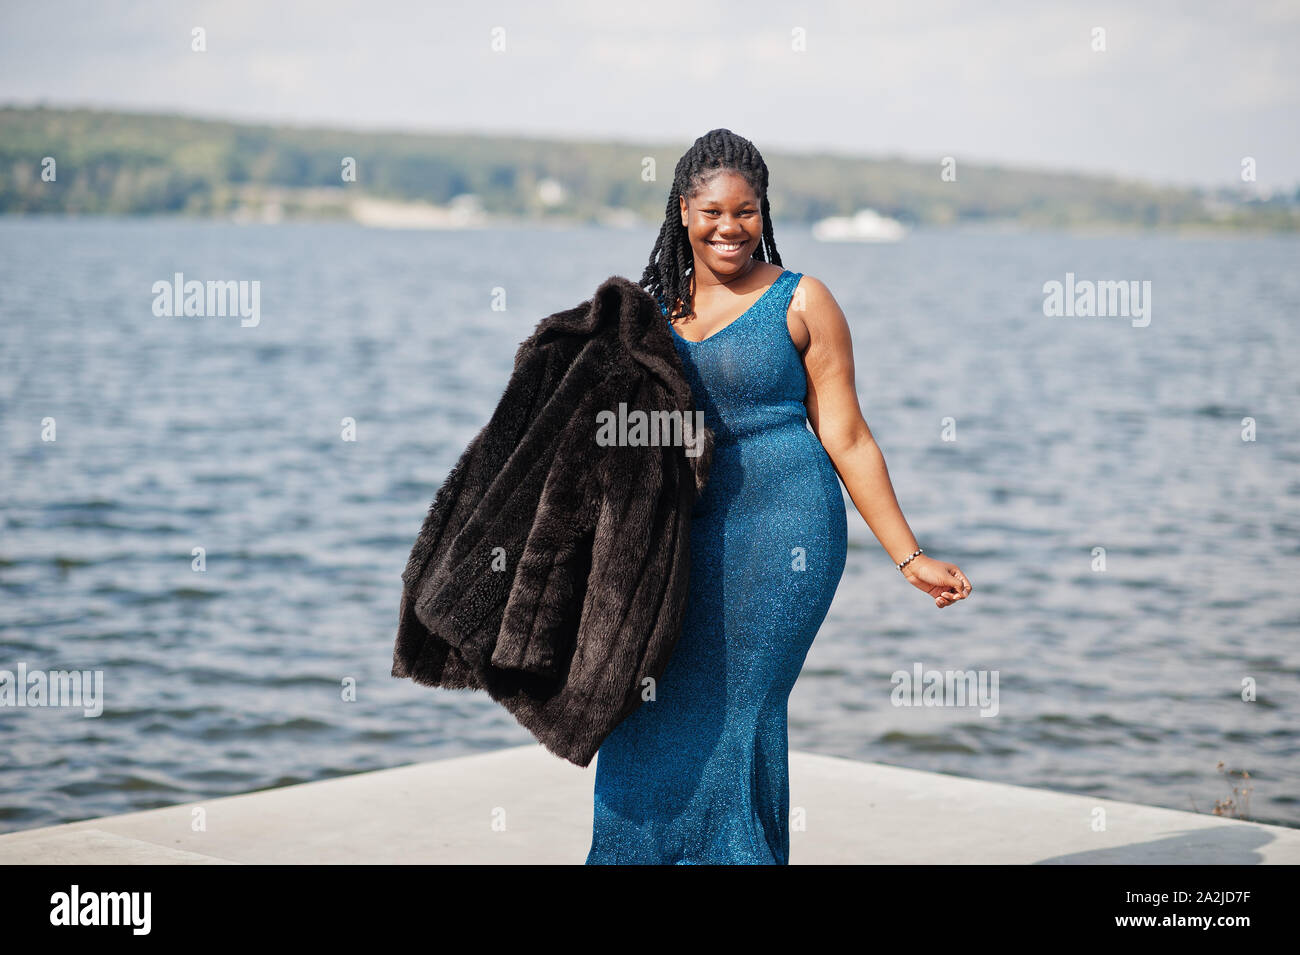 La peau foncée afro-américaine modèle taille plus posés dans une robe  brillante bleu et noir manteau de fourrure contre côté mer Photo Stock -  Alamy